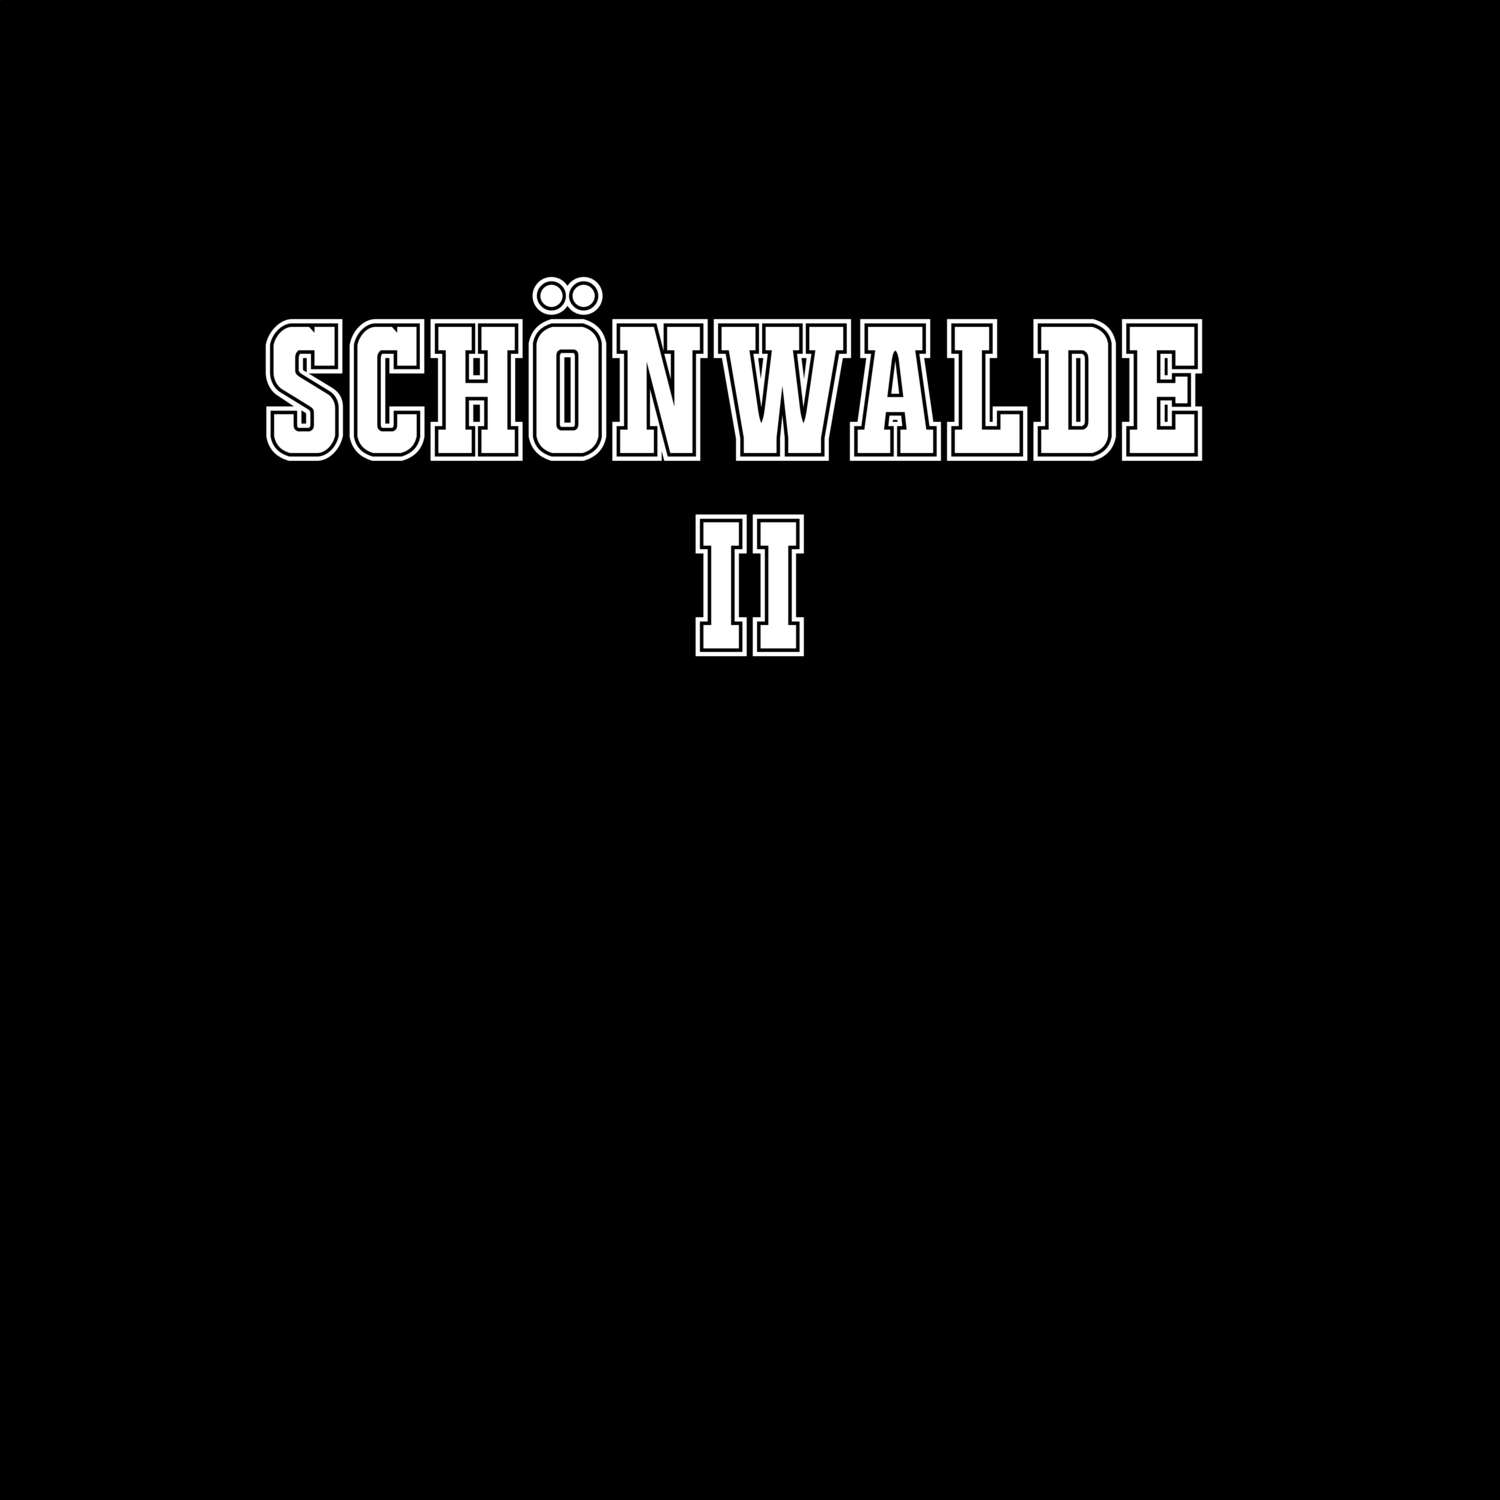 Schönwalde II T-Shirt »Classic«